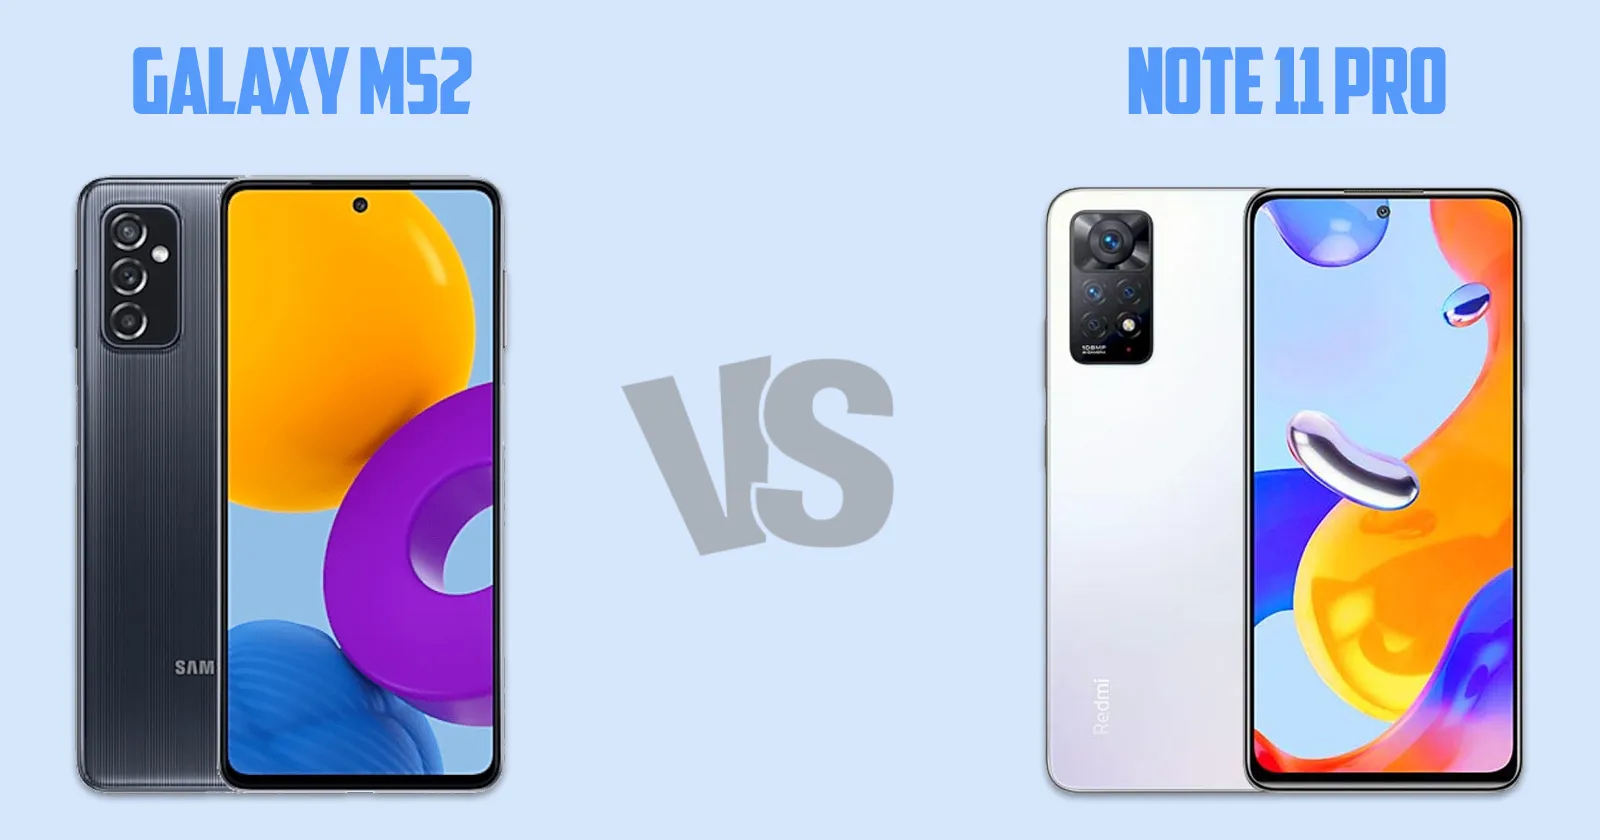 Samsung Galaxy M52 vs Xiaomi Redmi Note 11 pro [ Full Comparison ]